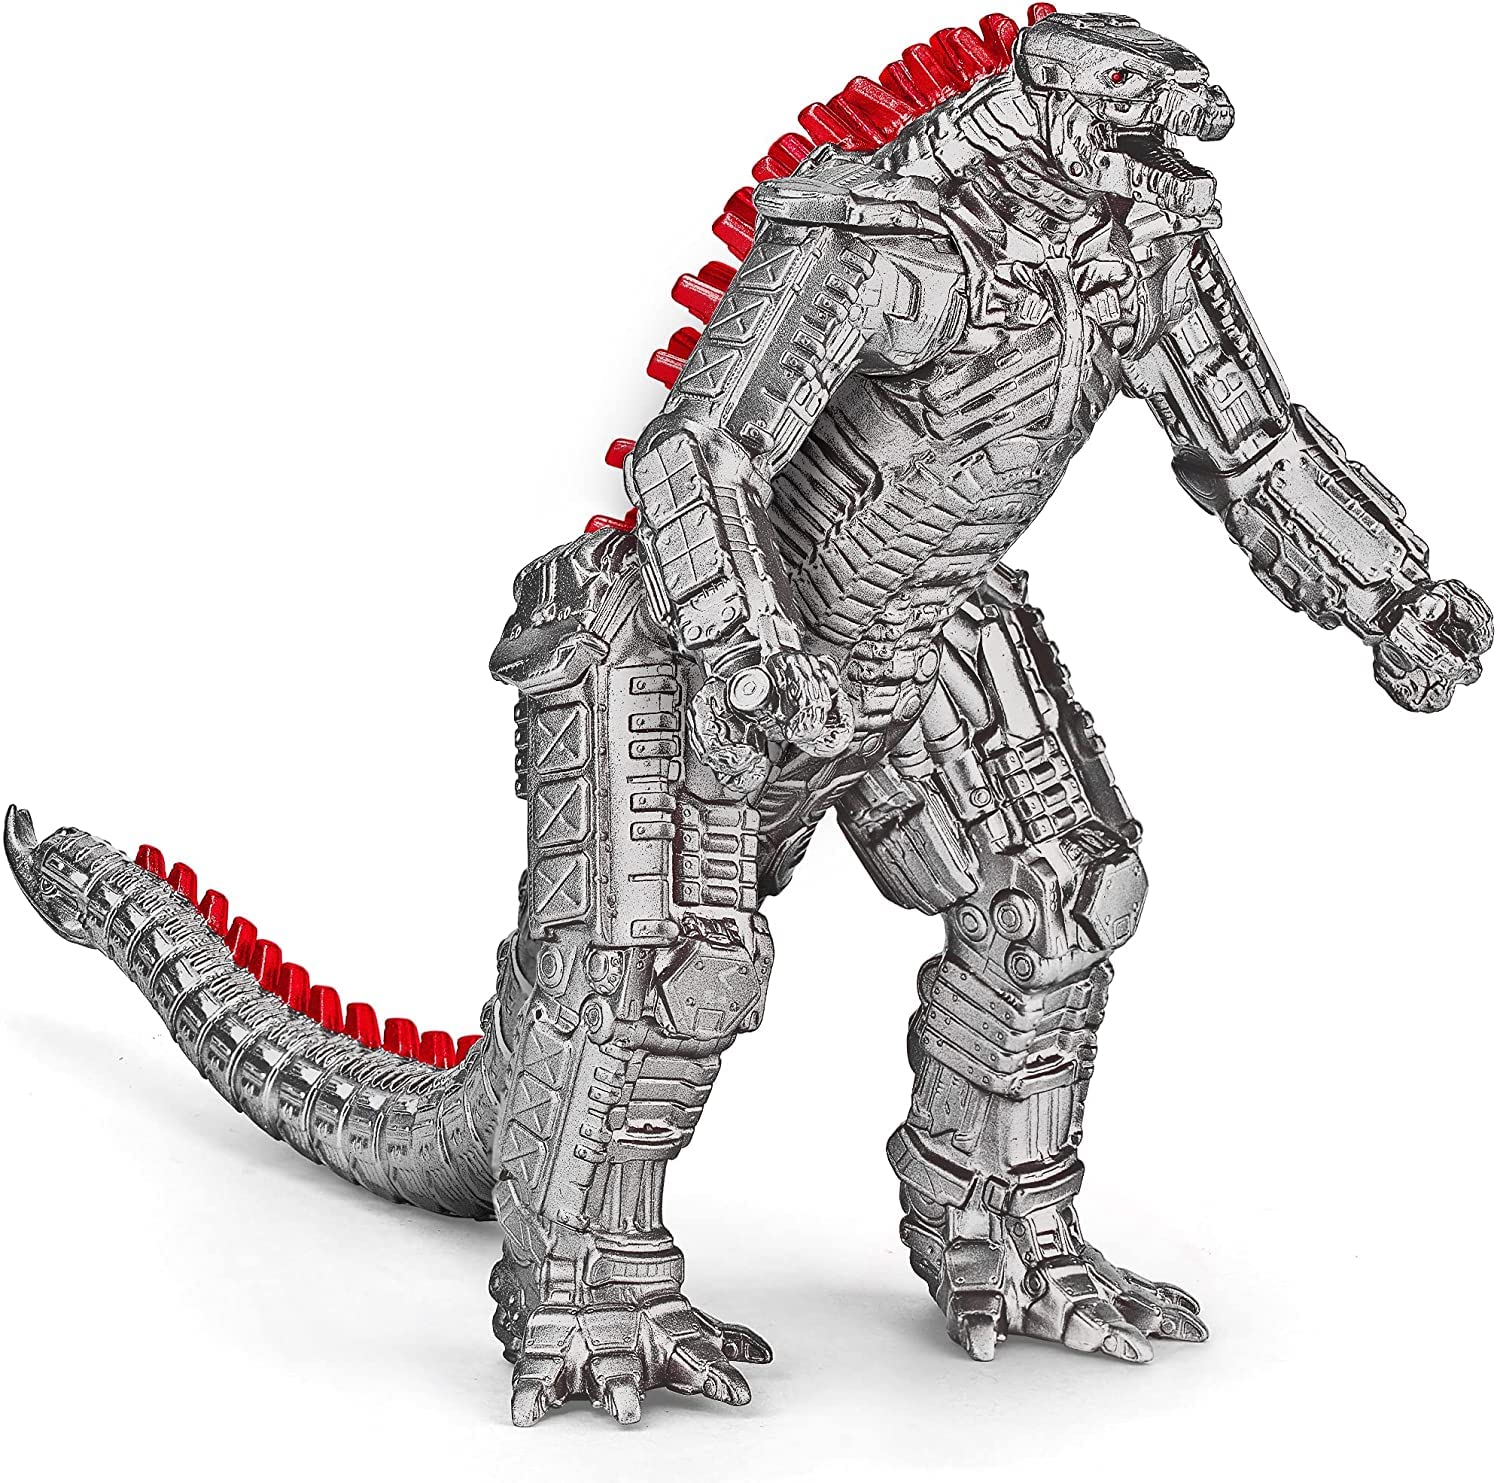 Thần kinh của bạn sẽ được kích hoạt khi nhìn thấy hình ảnh của MechaGodzilla! Hãy xem chiến binh robot mạnh mẽ này thách thức các quái thú khác trong vương quốc Godzilla.